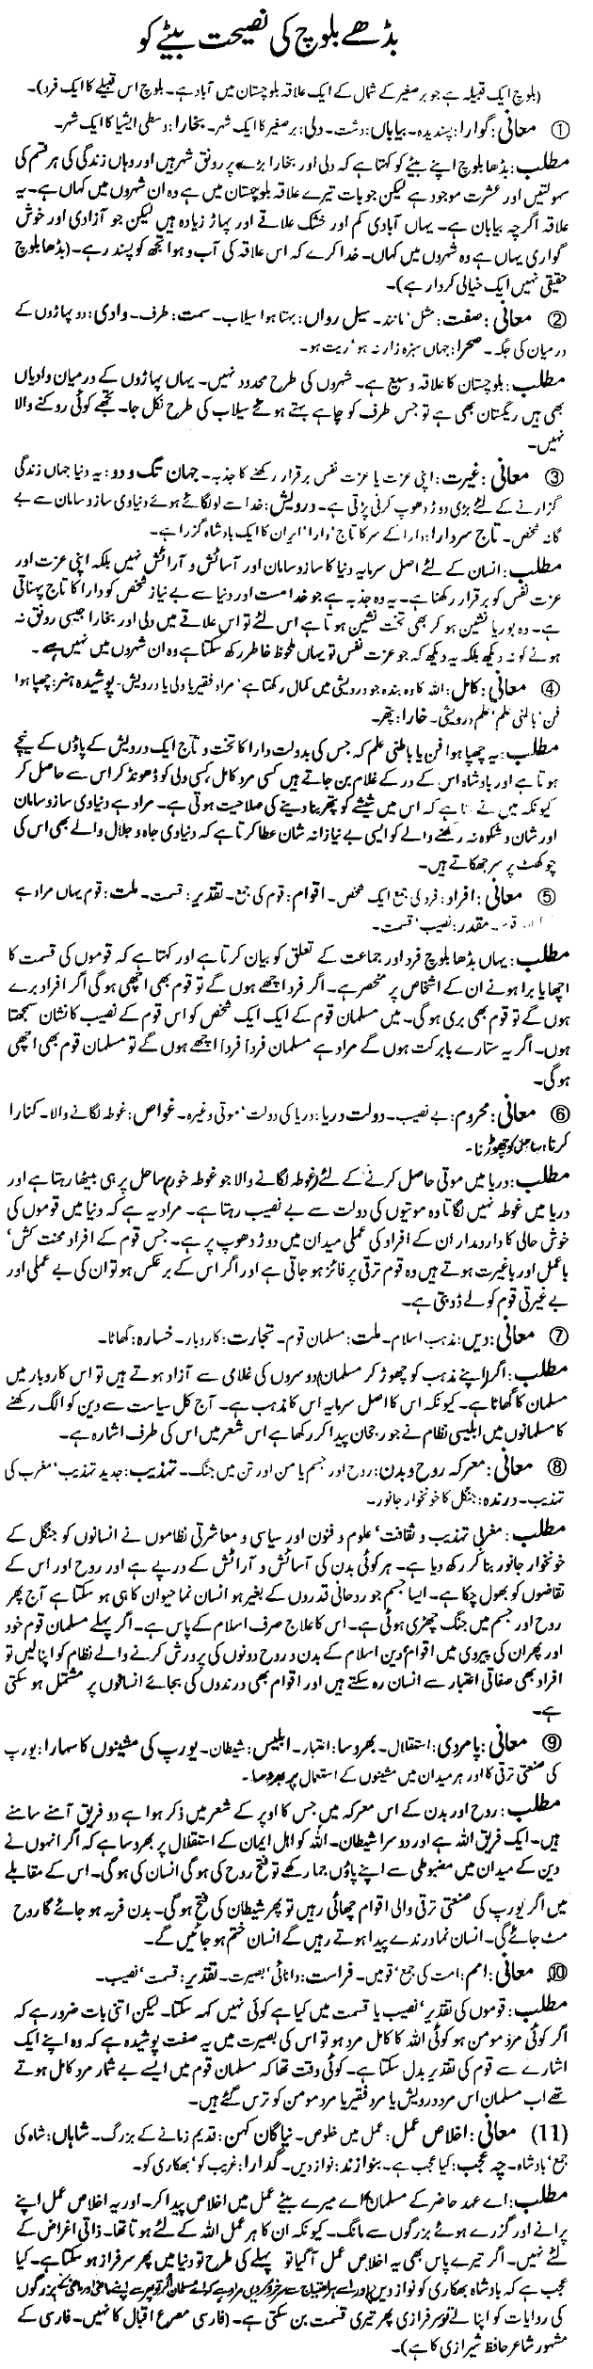 a-iqbal-armaghan-e-hijaz-02-poem-budhe-baloch-ki-nasihat-bete-ko-complete-interpretation-explanation-tashreeh-sharah-of-poetry-by-janab-israr-zaidi